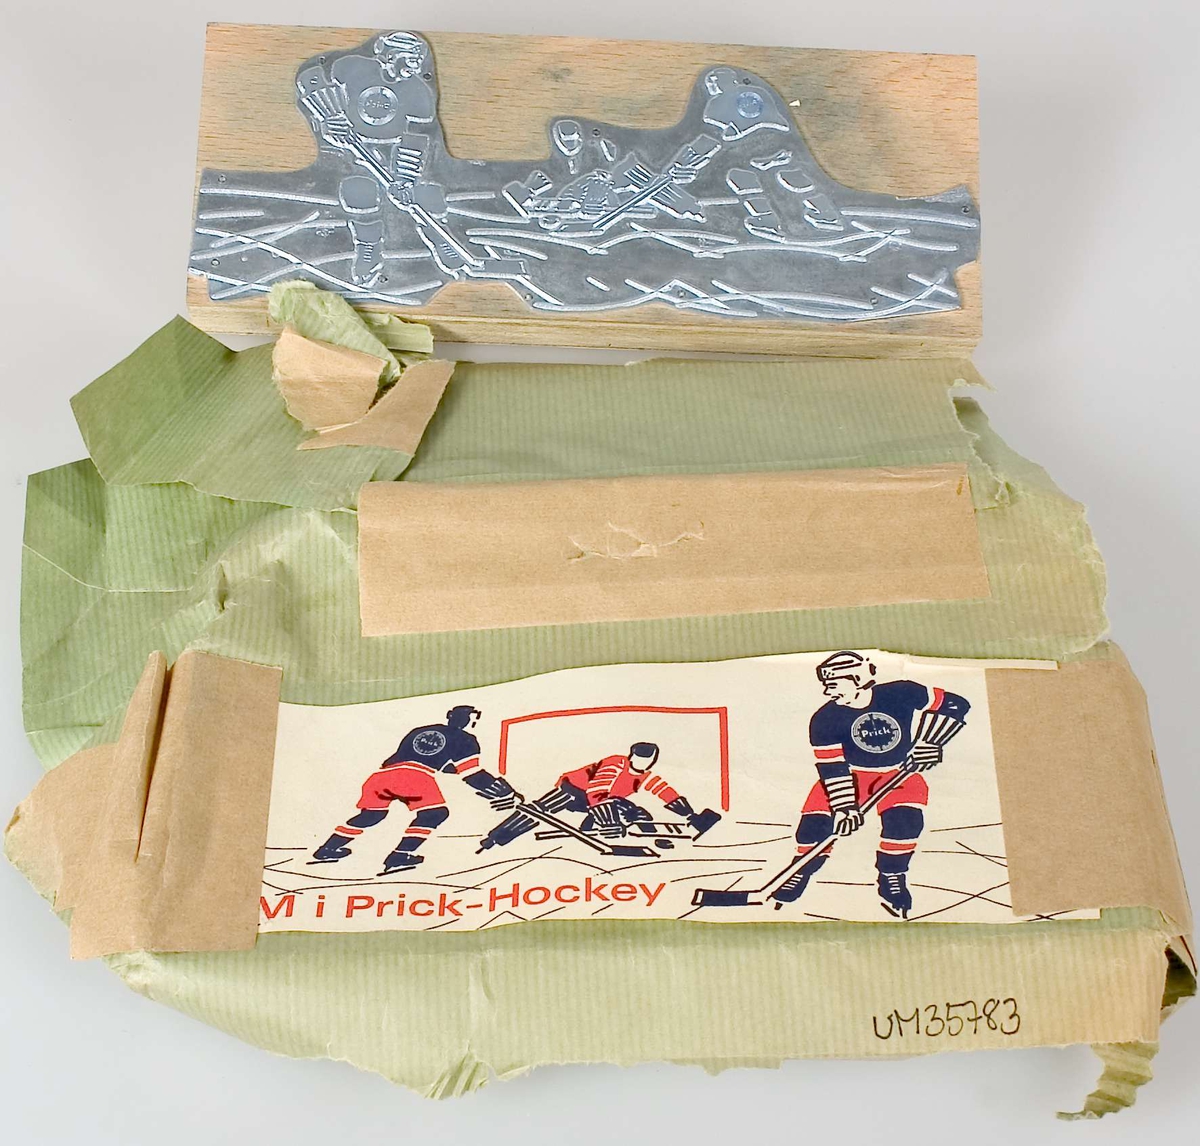 En kliché av metall, monterad på en platta av skiktlimmat trä. Har varit förpackad i ett  grönt omslagsapper på vilket ett exemplar av den tryckta produkten är fäst med tejp. Tryck i rött och blått, tre ishockeyspelare samt texten: VM i Prick-Hockey. Logotypen Prick på två av ishockeyspelarnas tröjor.